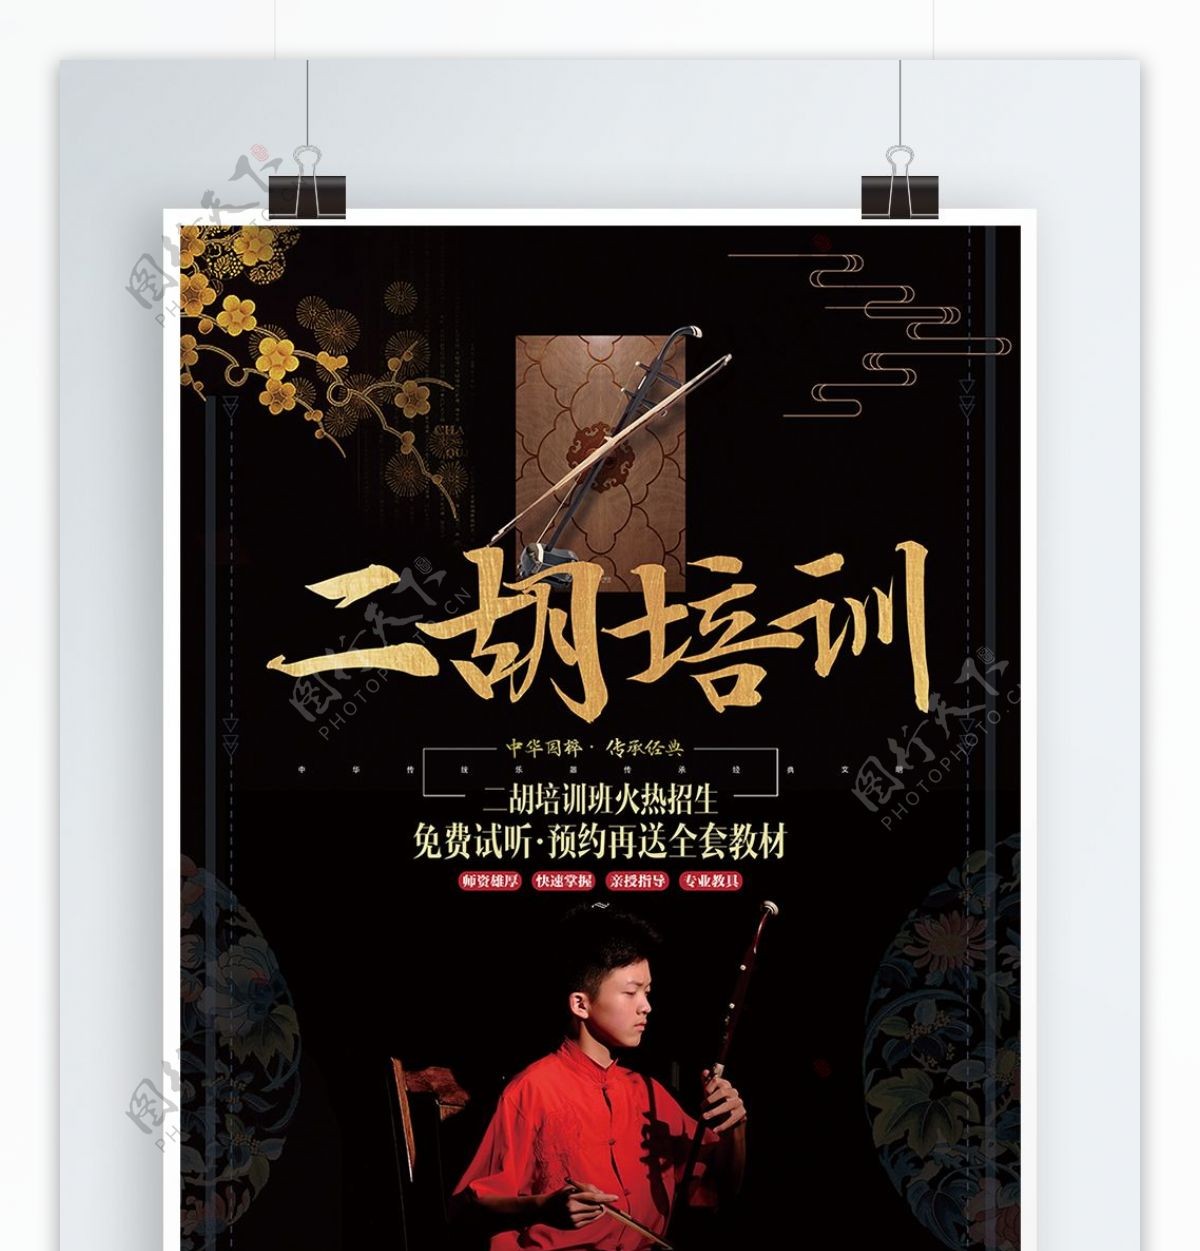 中国风简约二胡乐器培训班宣传促销海报